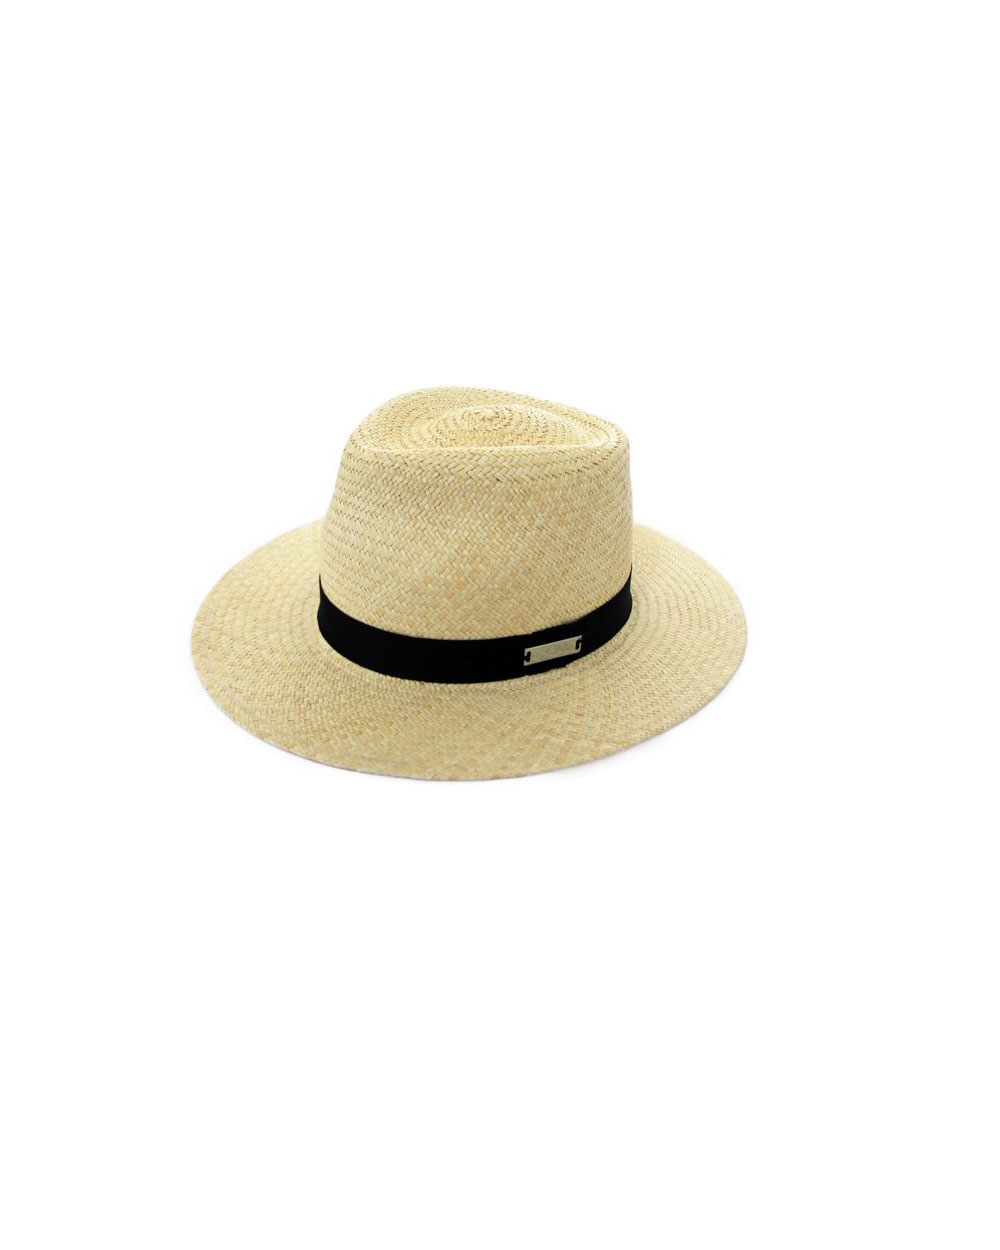 Rebe Baby Resort Panama straw hat